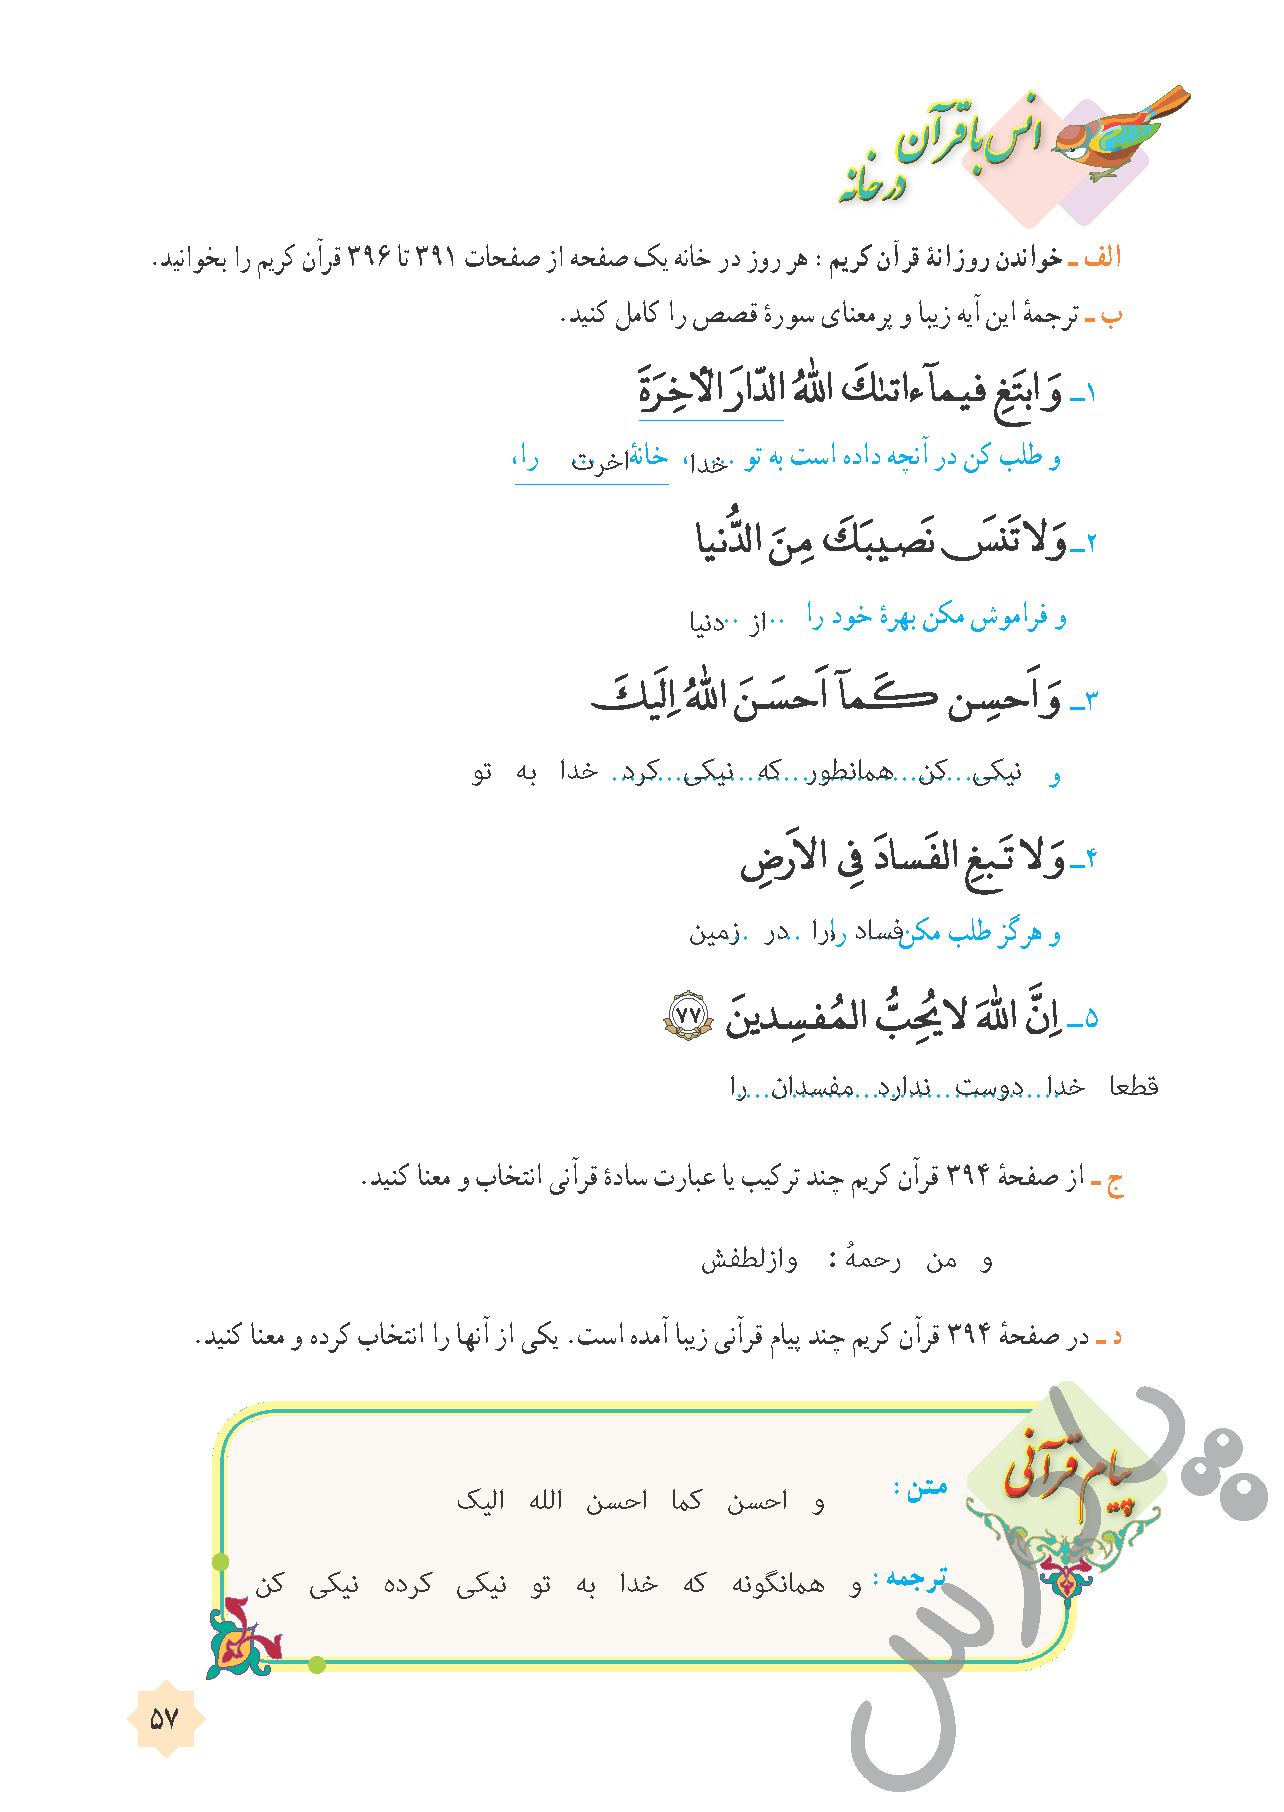 جواب فعالیت سوم درس 5 قرآن هشتم-جلسه دوم